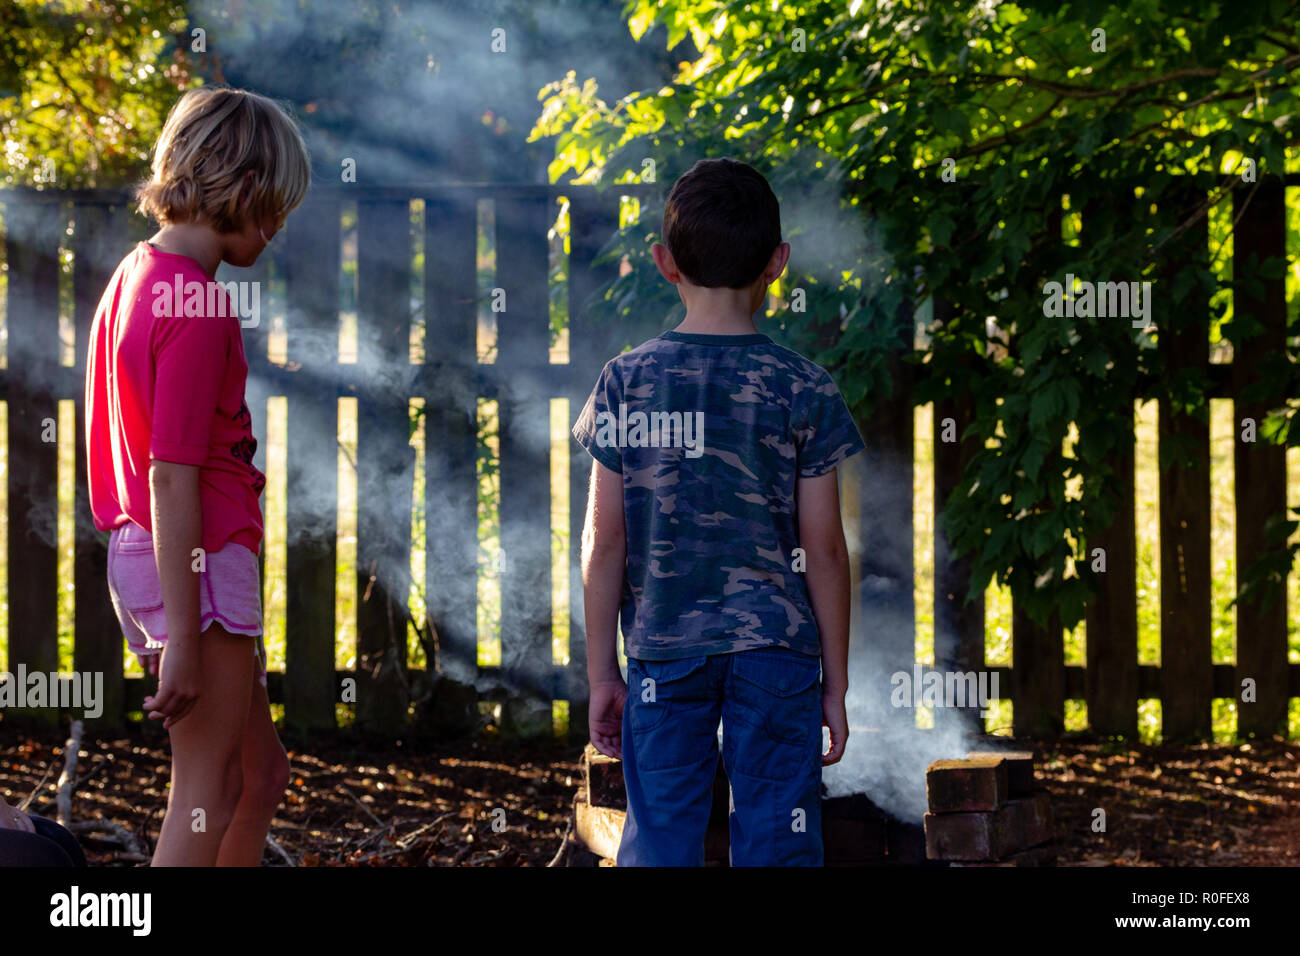 Authentisches Bild von zwei Kindern draußen im Garten in Rauch auf Feuer, am späten Nachmittag Sonne. Kinder aus Geräten und in der freien Natur. Stockfoto